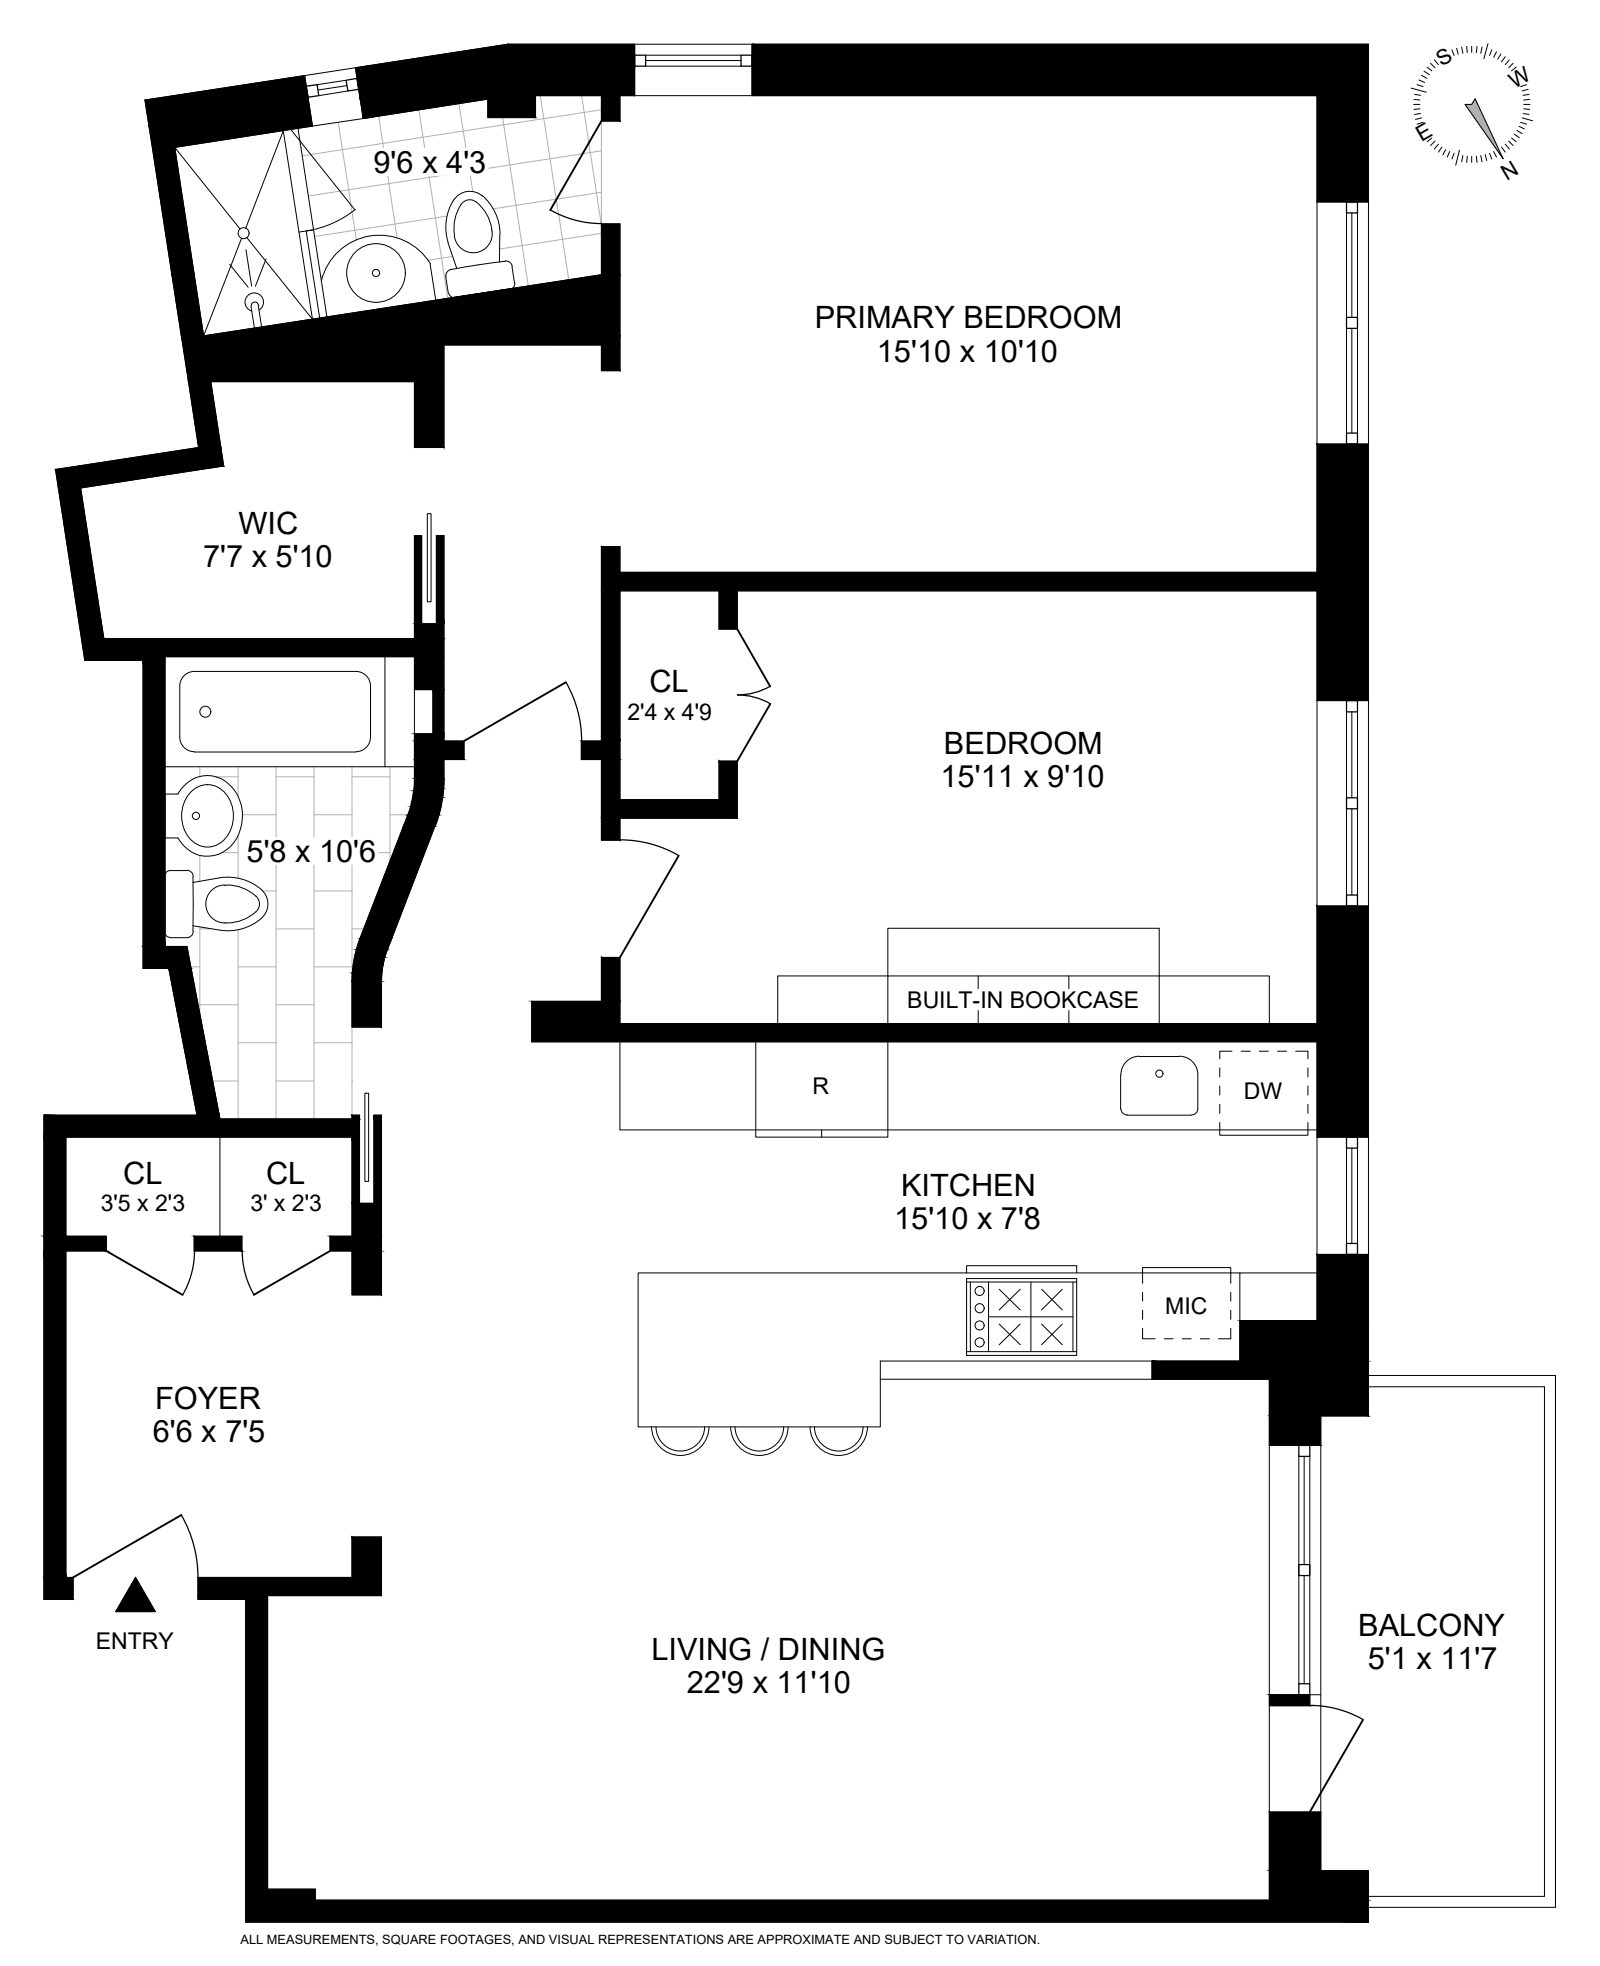 Floorplan for 100 Overlook Terrace, 421